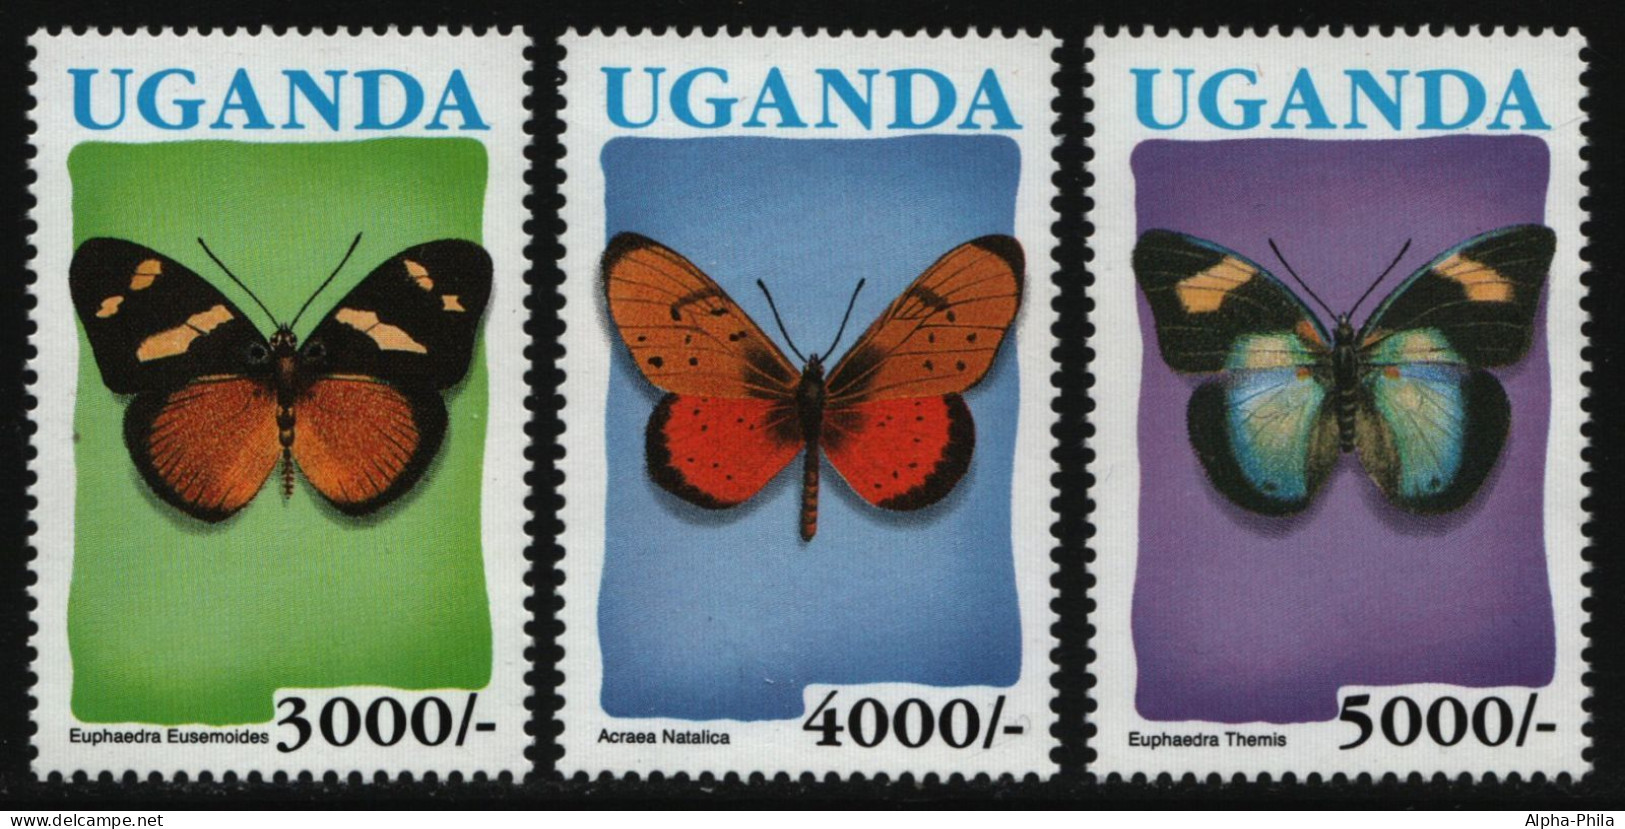 Uganda 1992 - Mi-Nr. 1084-1086 ** - MNH - Schmetterlinge / Butterflies (II) - Uganda (1962-...)